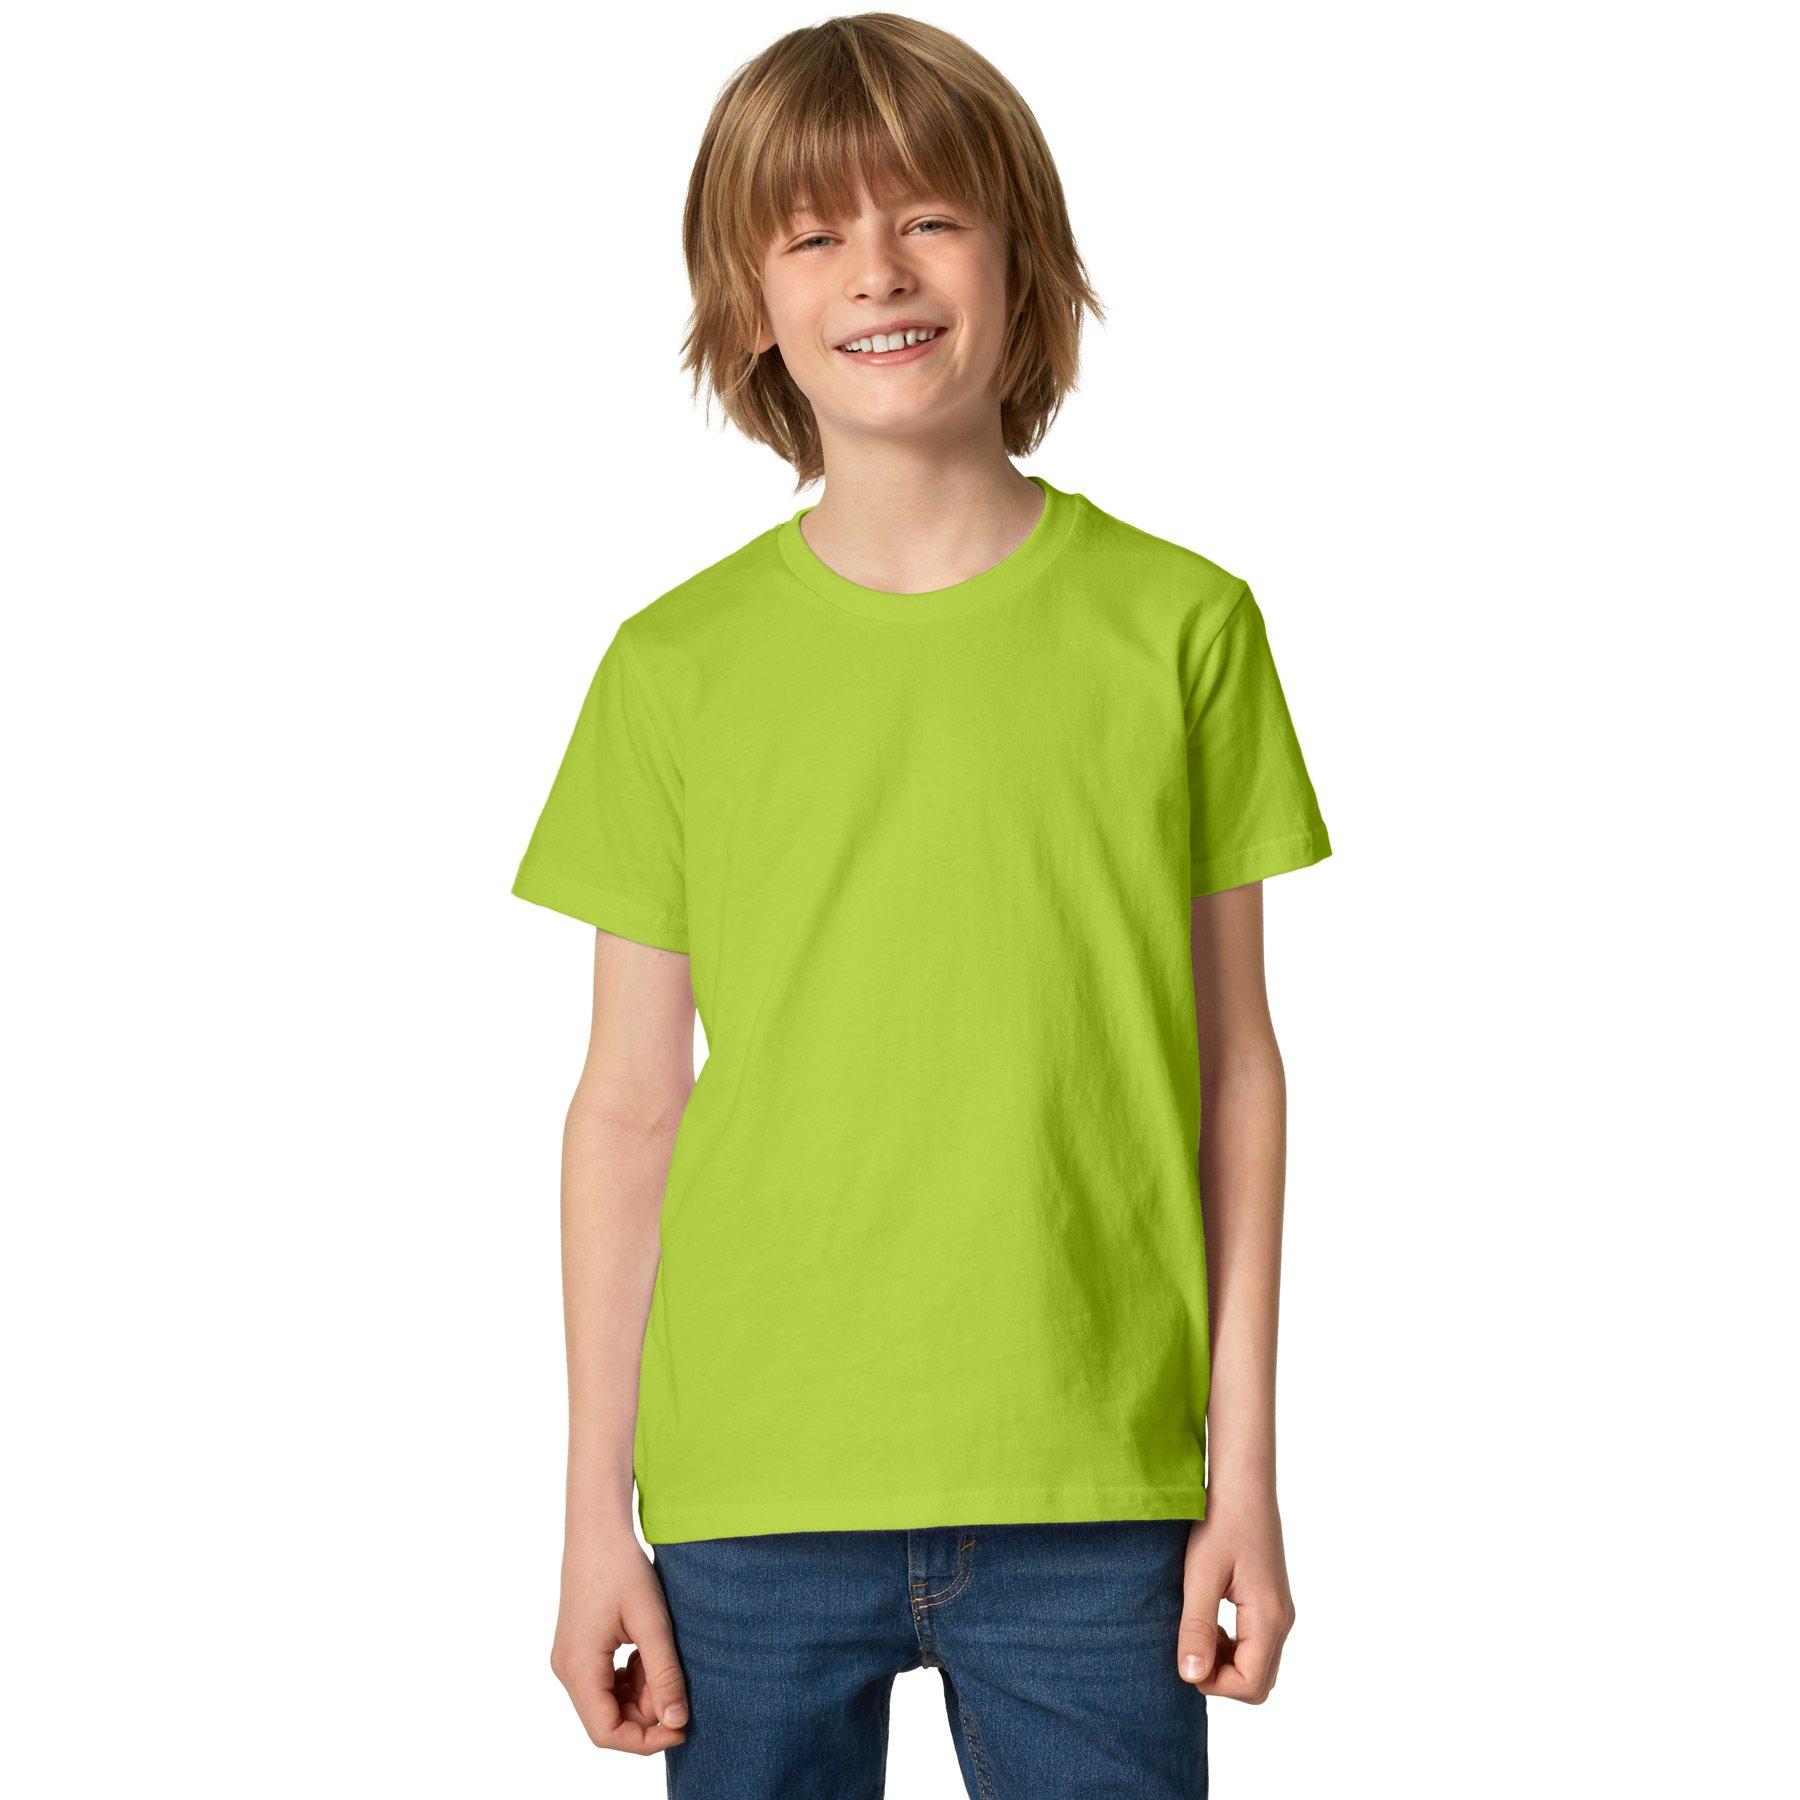 T-shirt Kinder Jungen Hellgrün 152 von Tectake